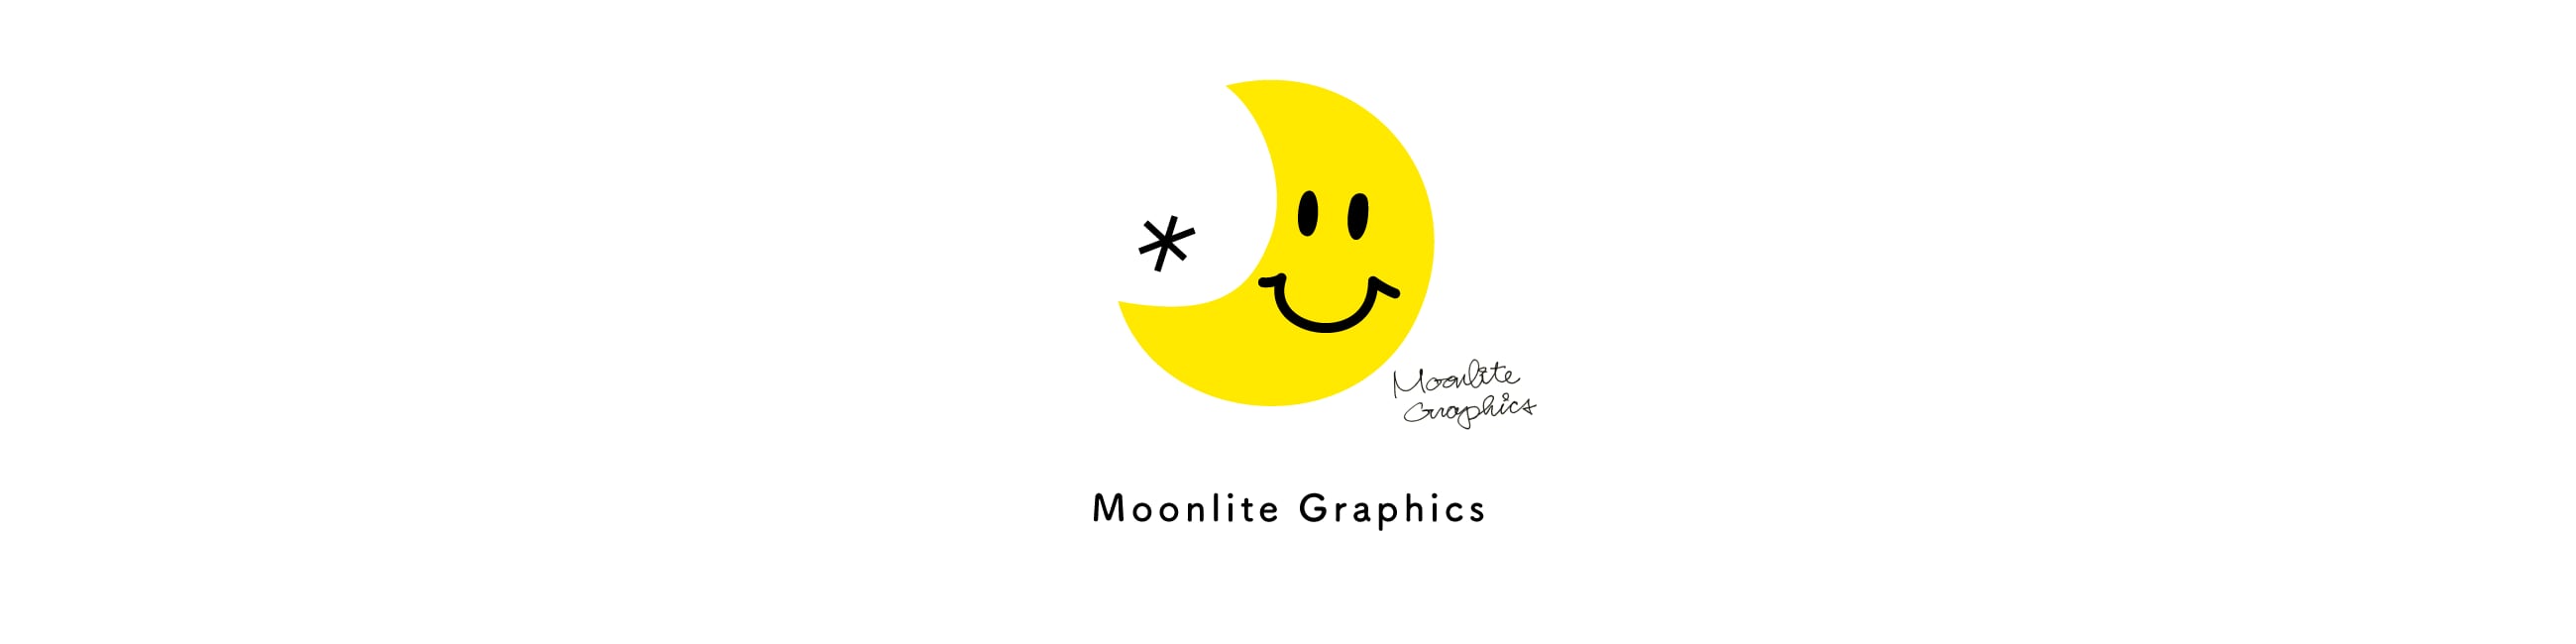 Moonlite Graphics